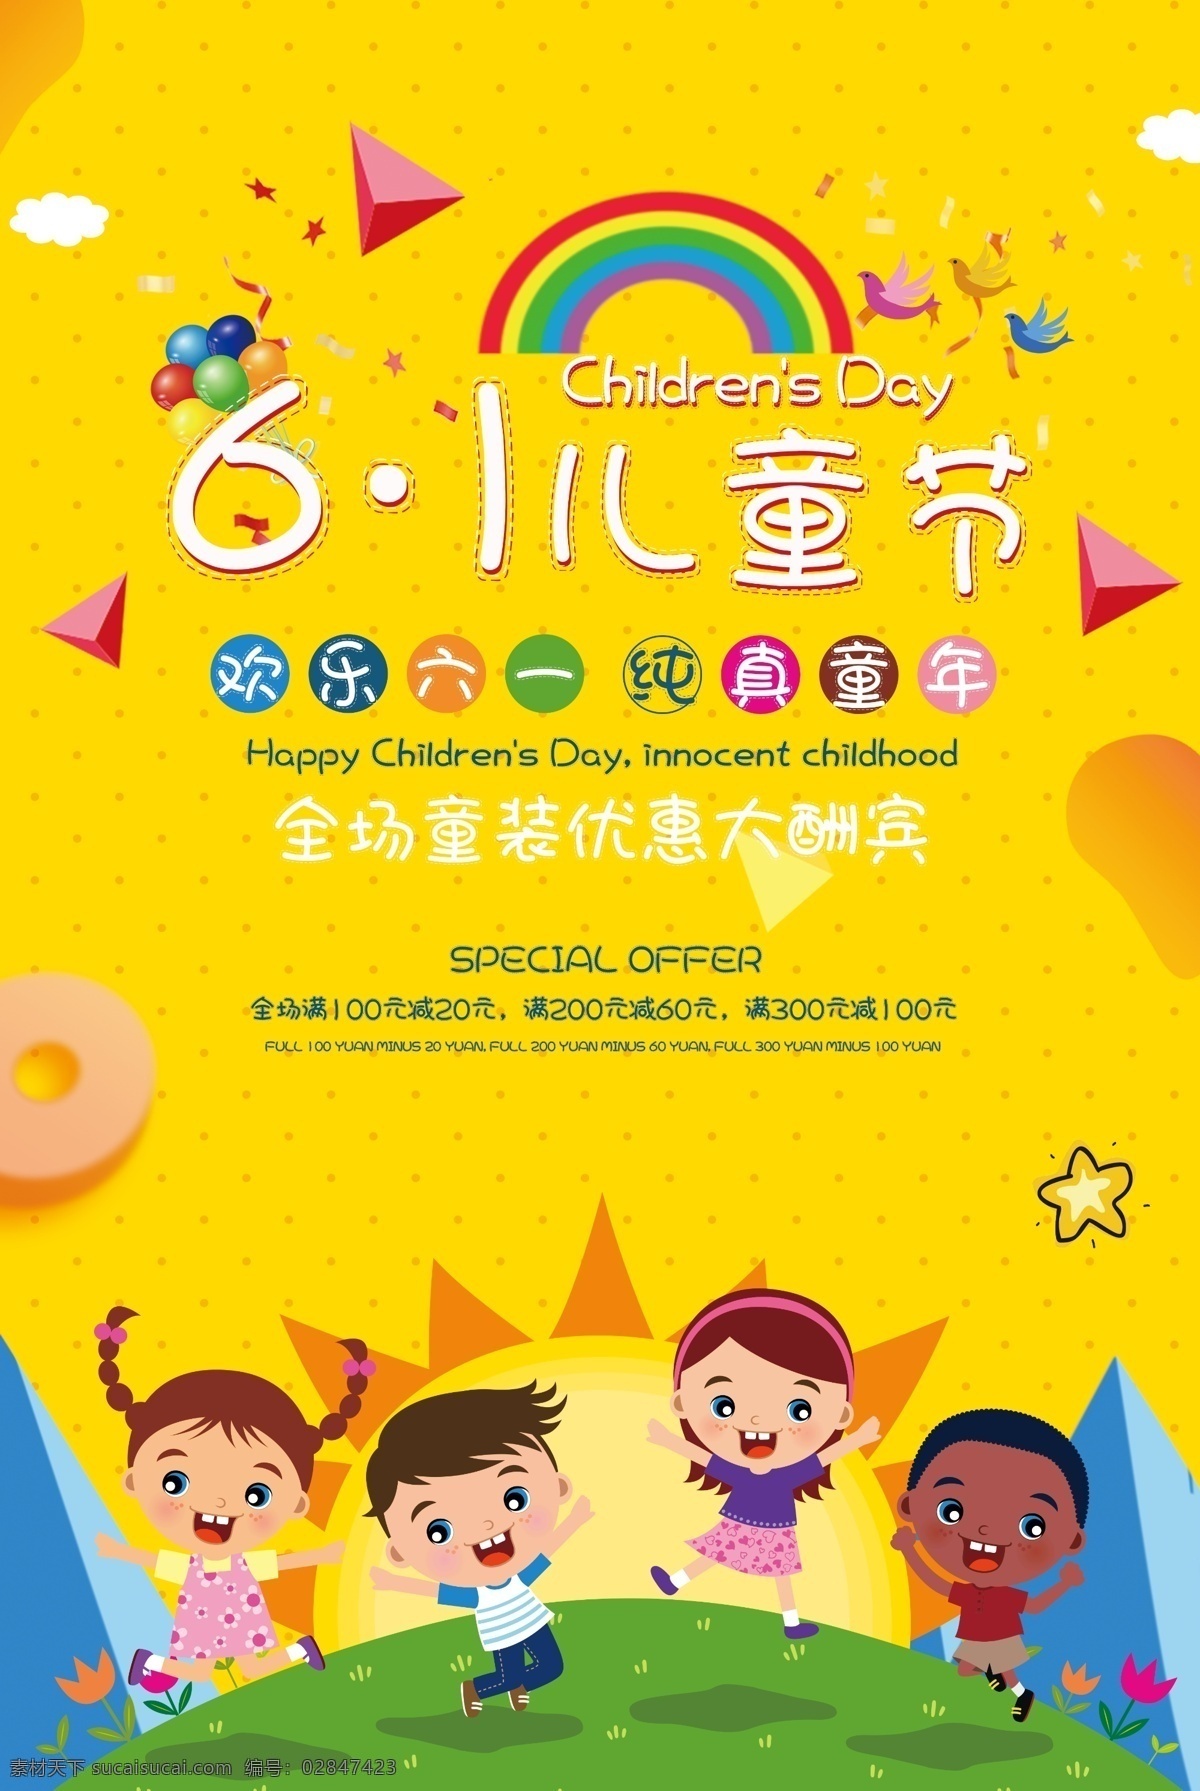 六一儿童节 海报 六一 国际 儿童节 孩子 棒棒糖 玩具 零食 彩虹 快乐 童心 节日 小朋友 宣传海报 专业